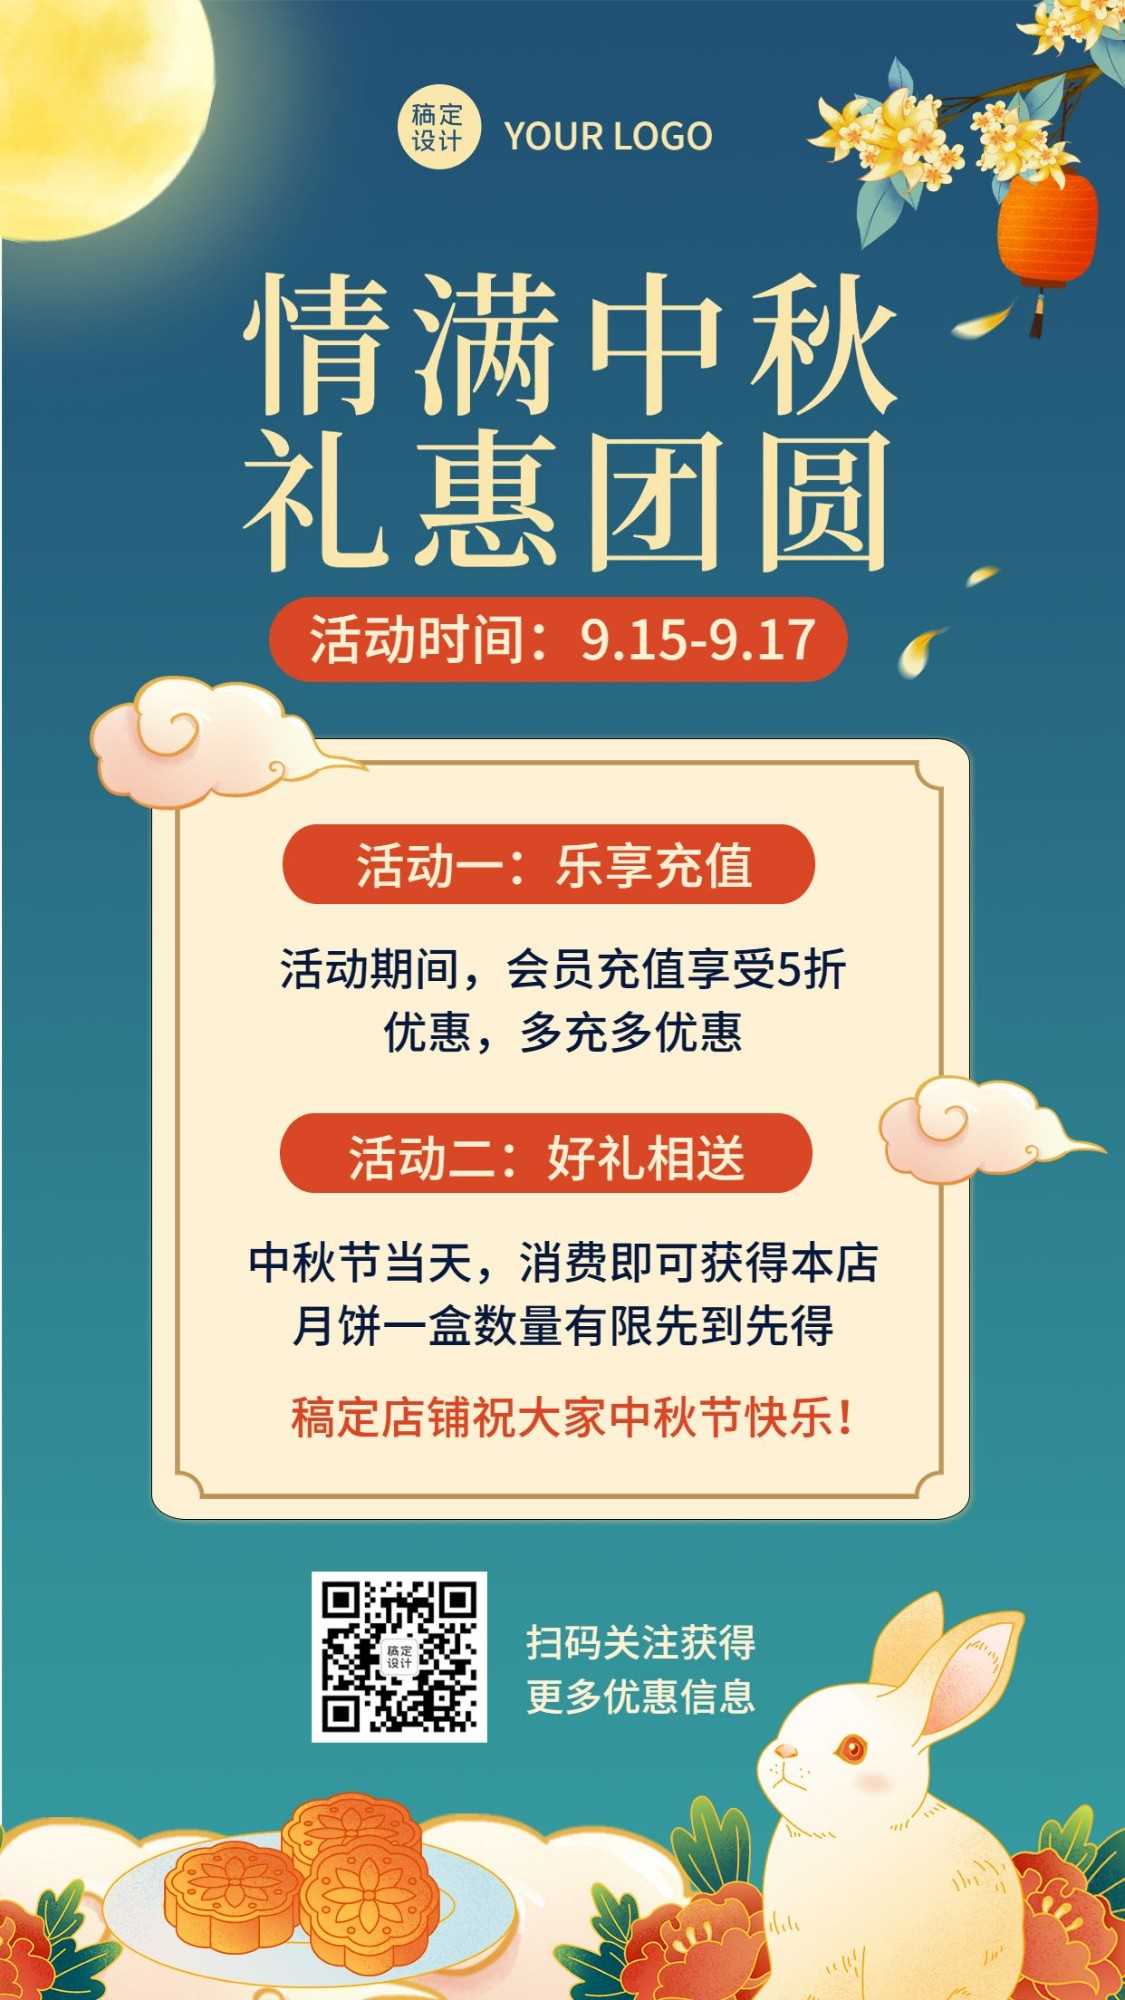 中秋节营销活动促销手绘手机海报